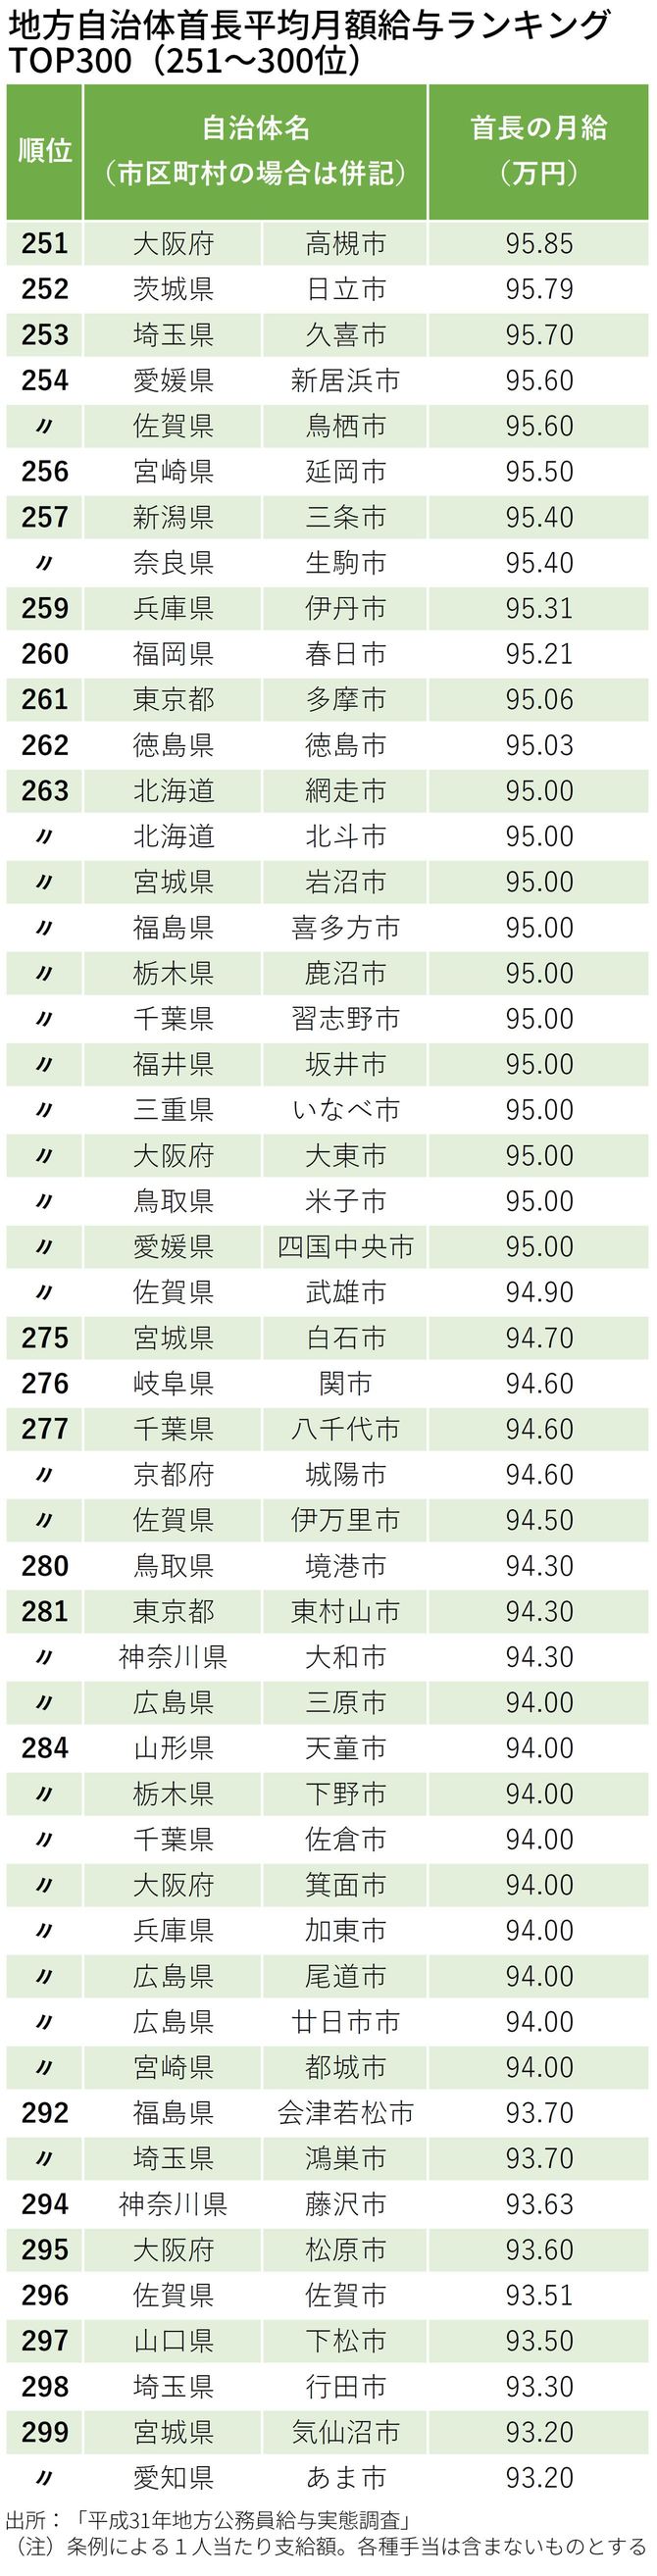 地方自治体首長平均月額給与ランキング TOP300（251～300位）